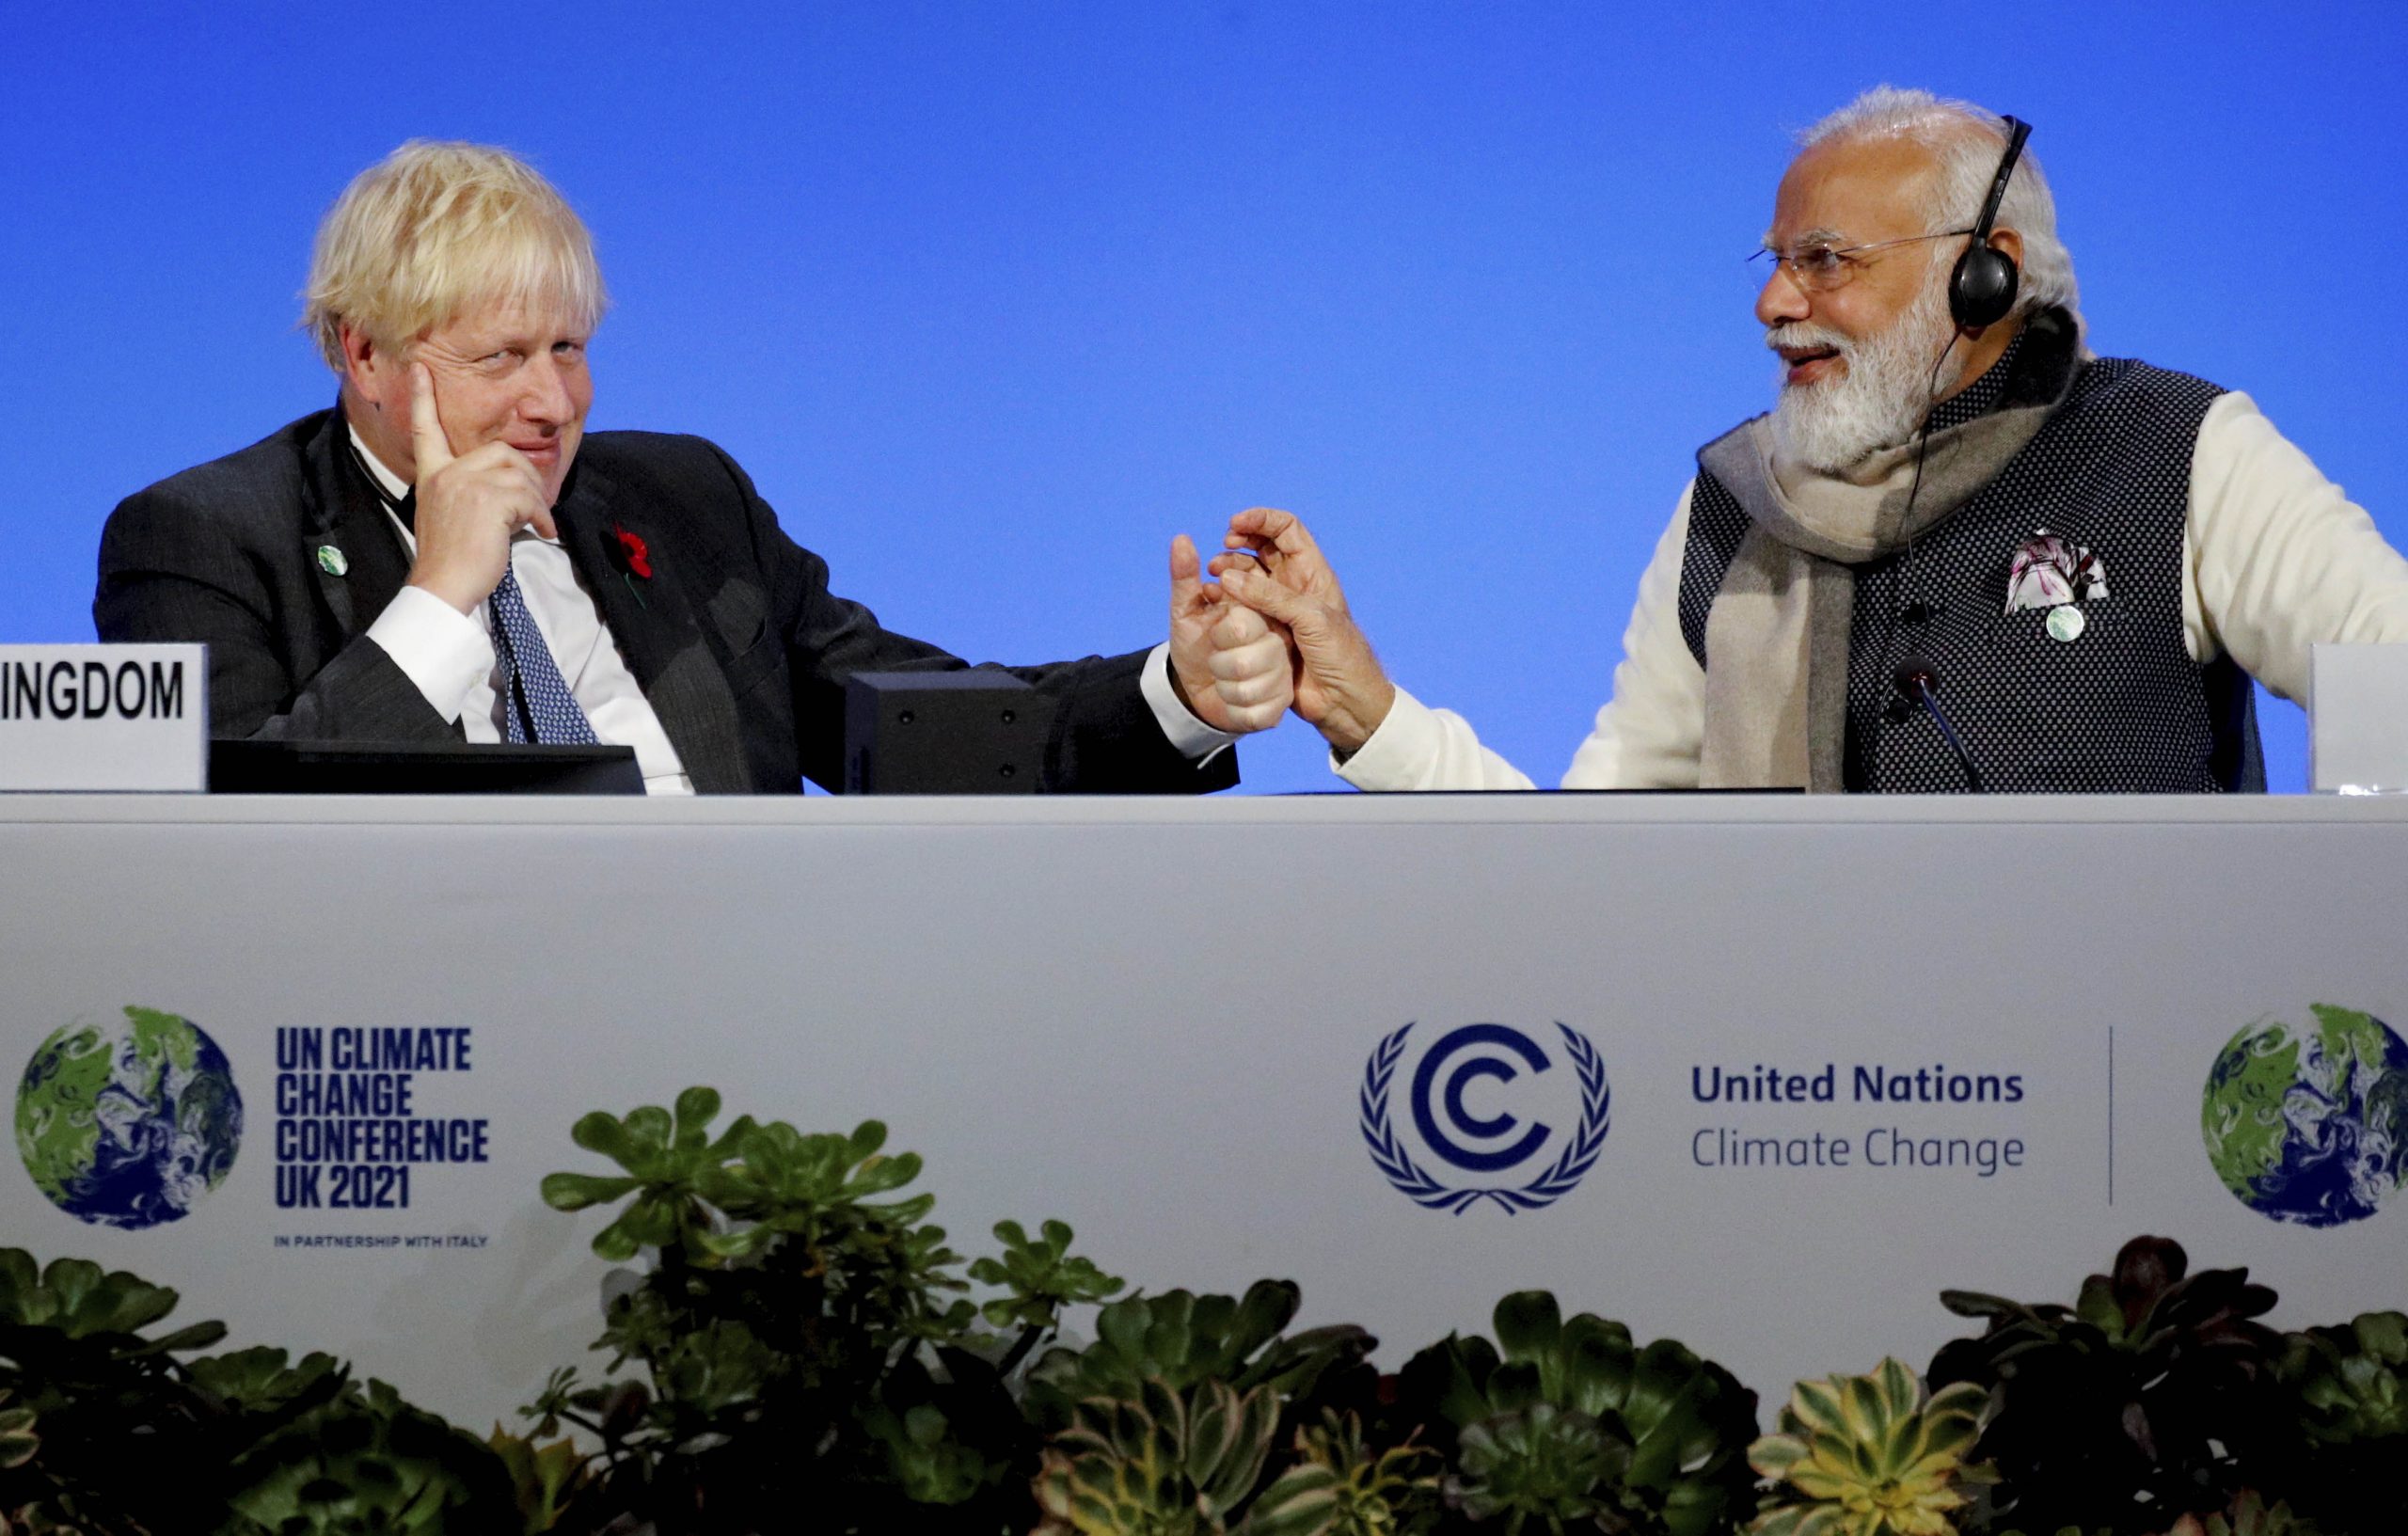 India’s ISRO to develop ‘solar power calculator’ for world: Modi at COP26